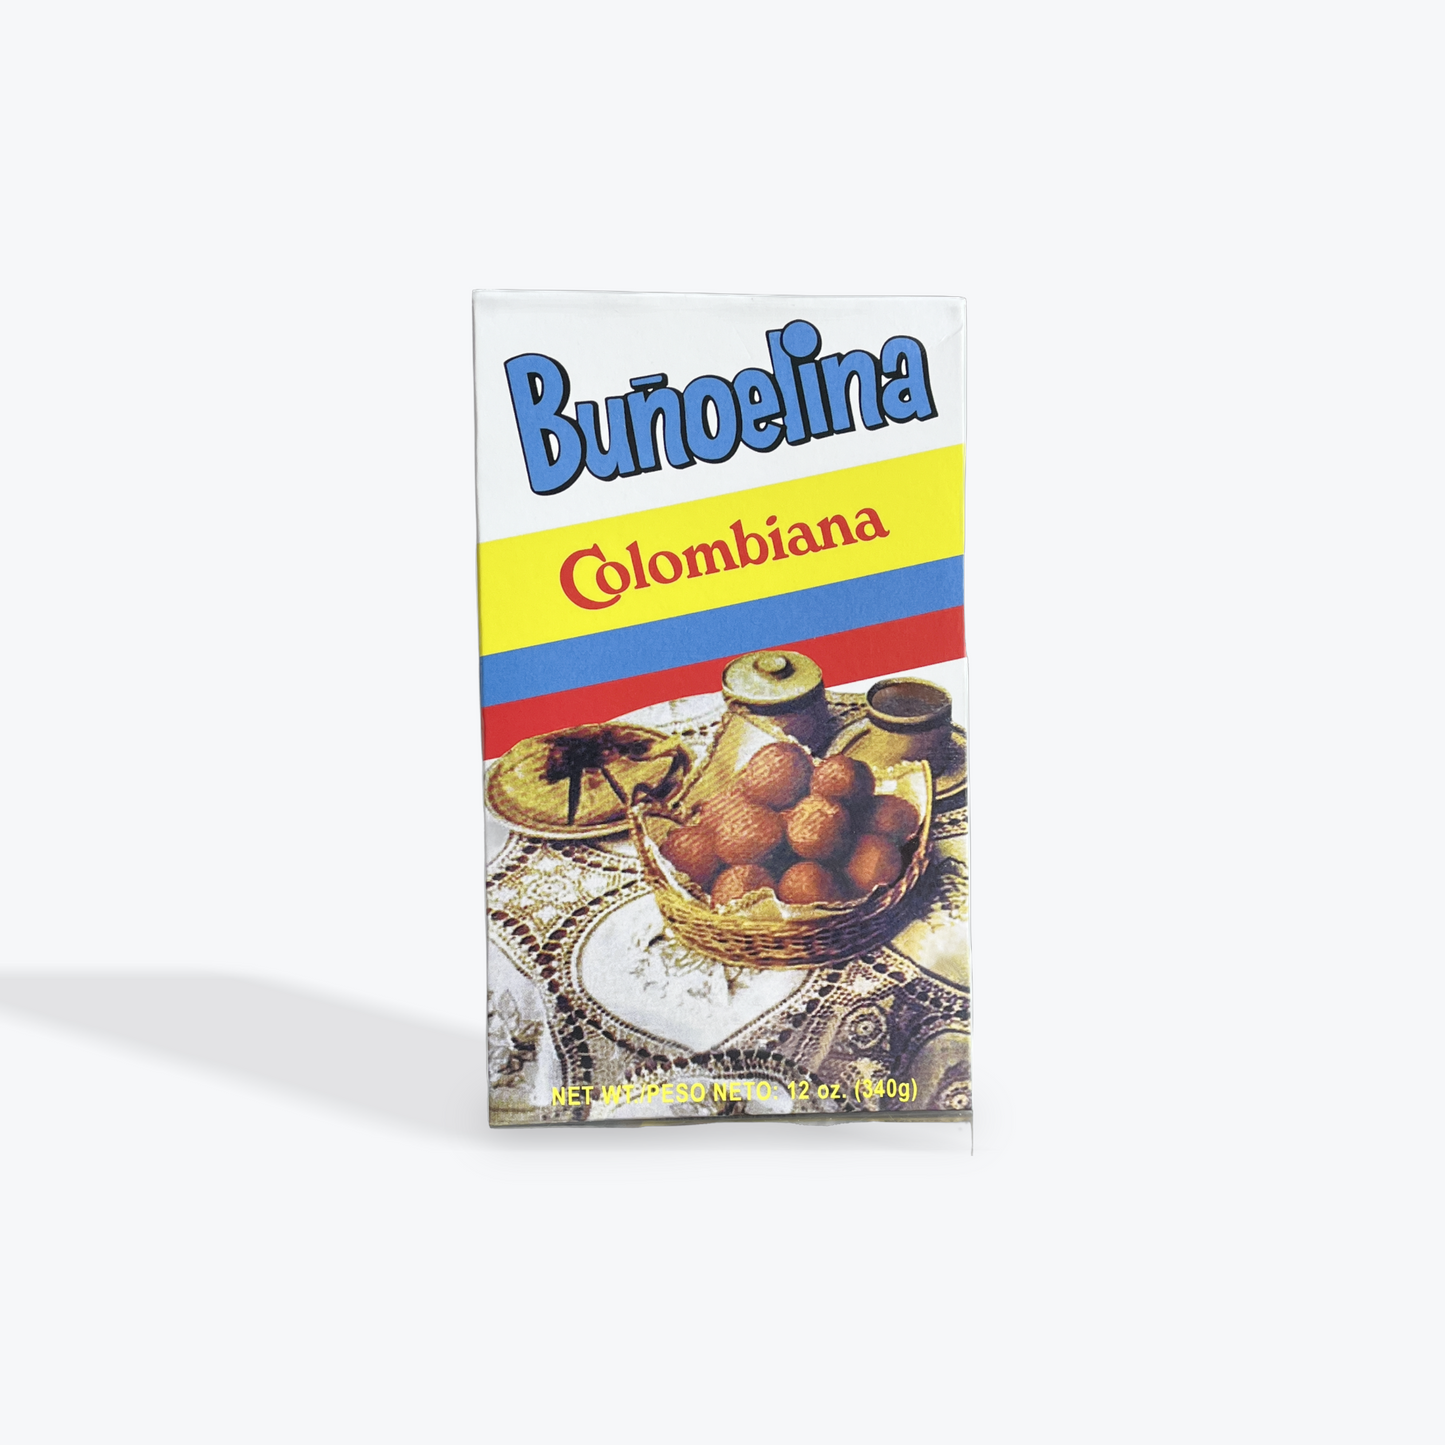 Colombiana - Bunuelina, 12 Oz, Single box